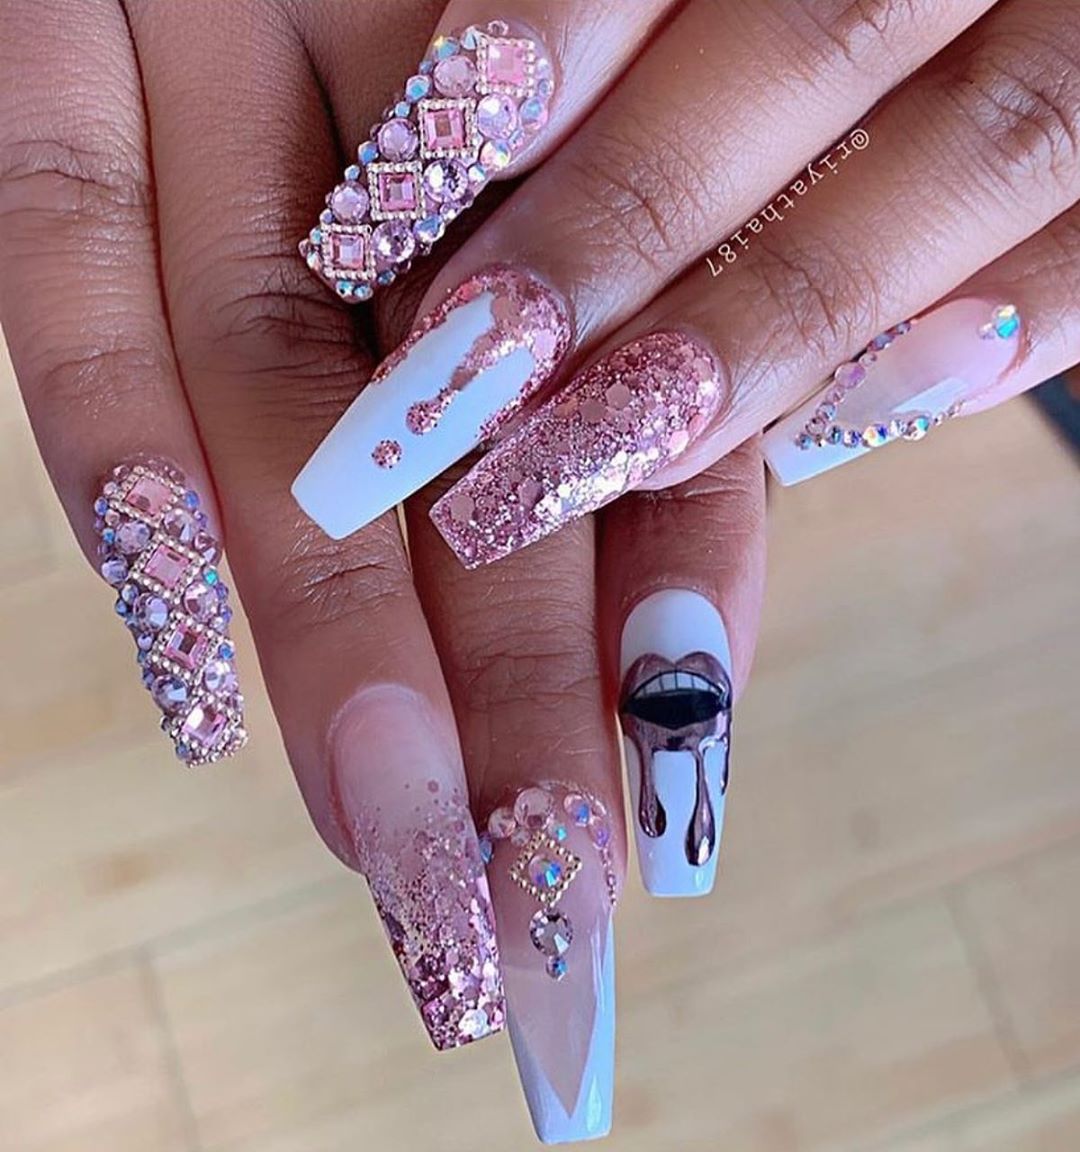 Embellished pink chrome nails